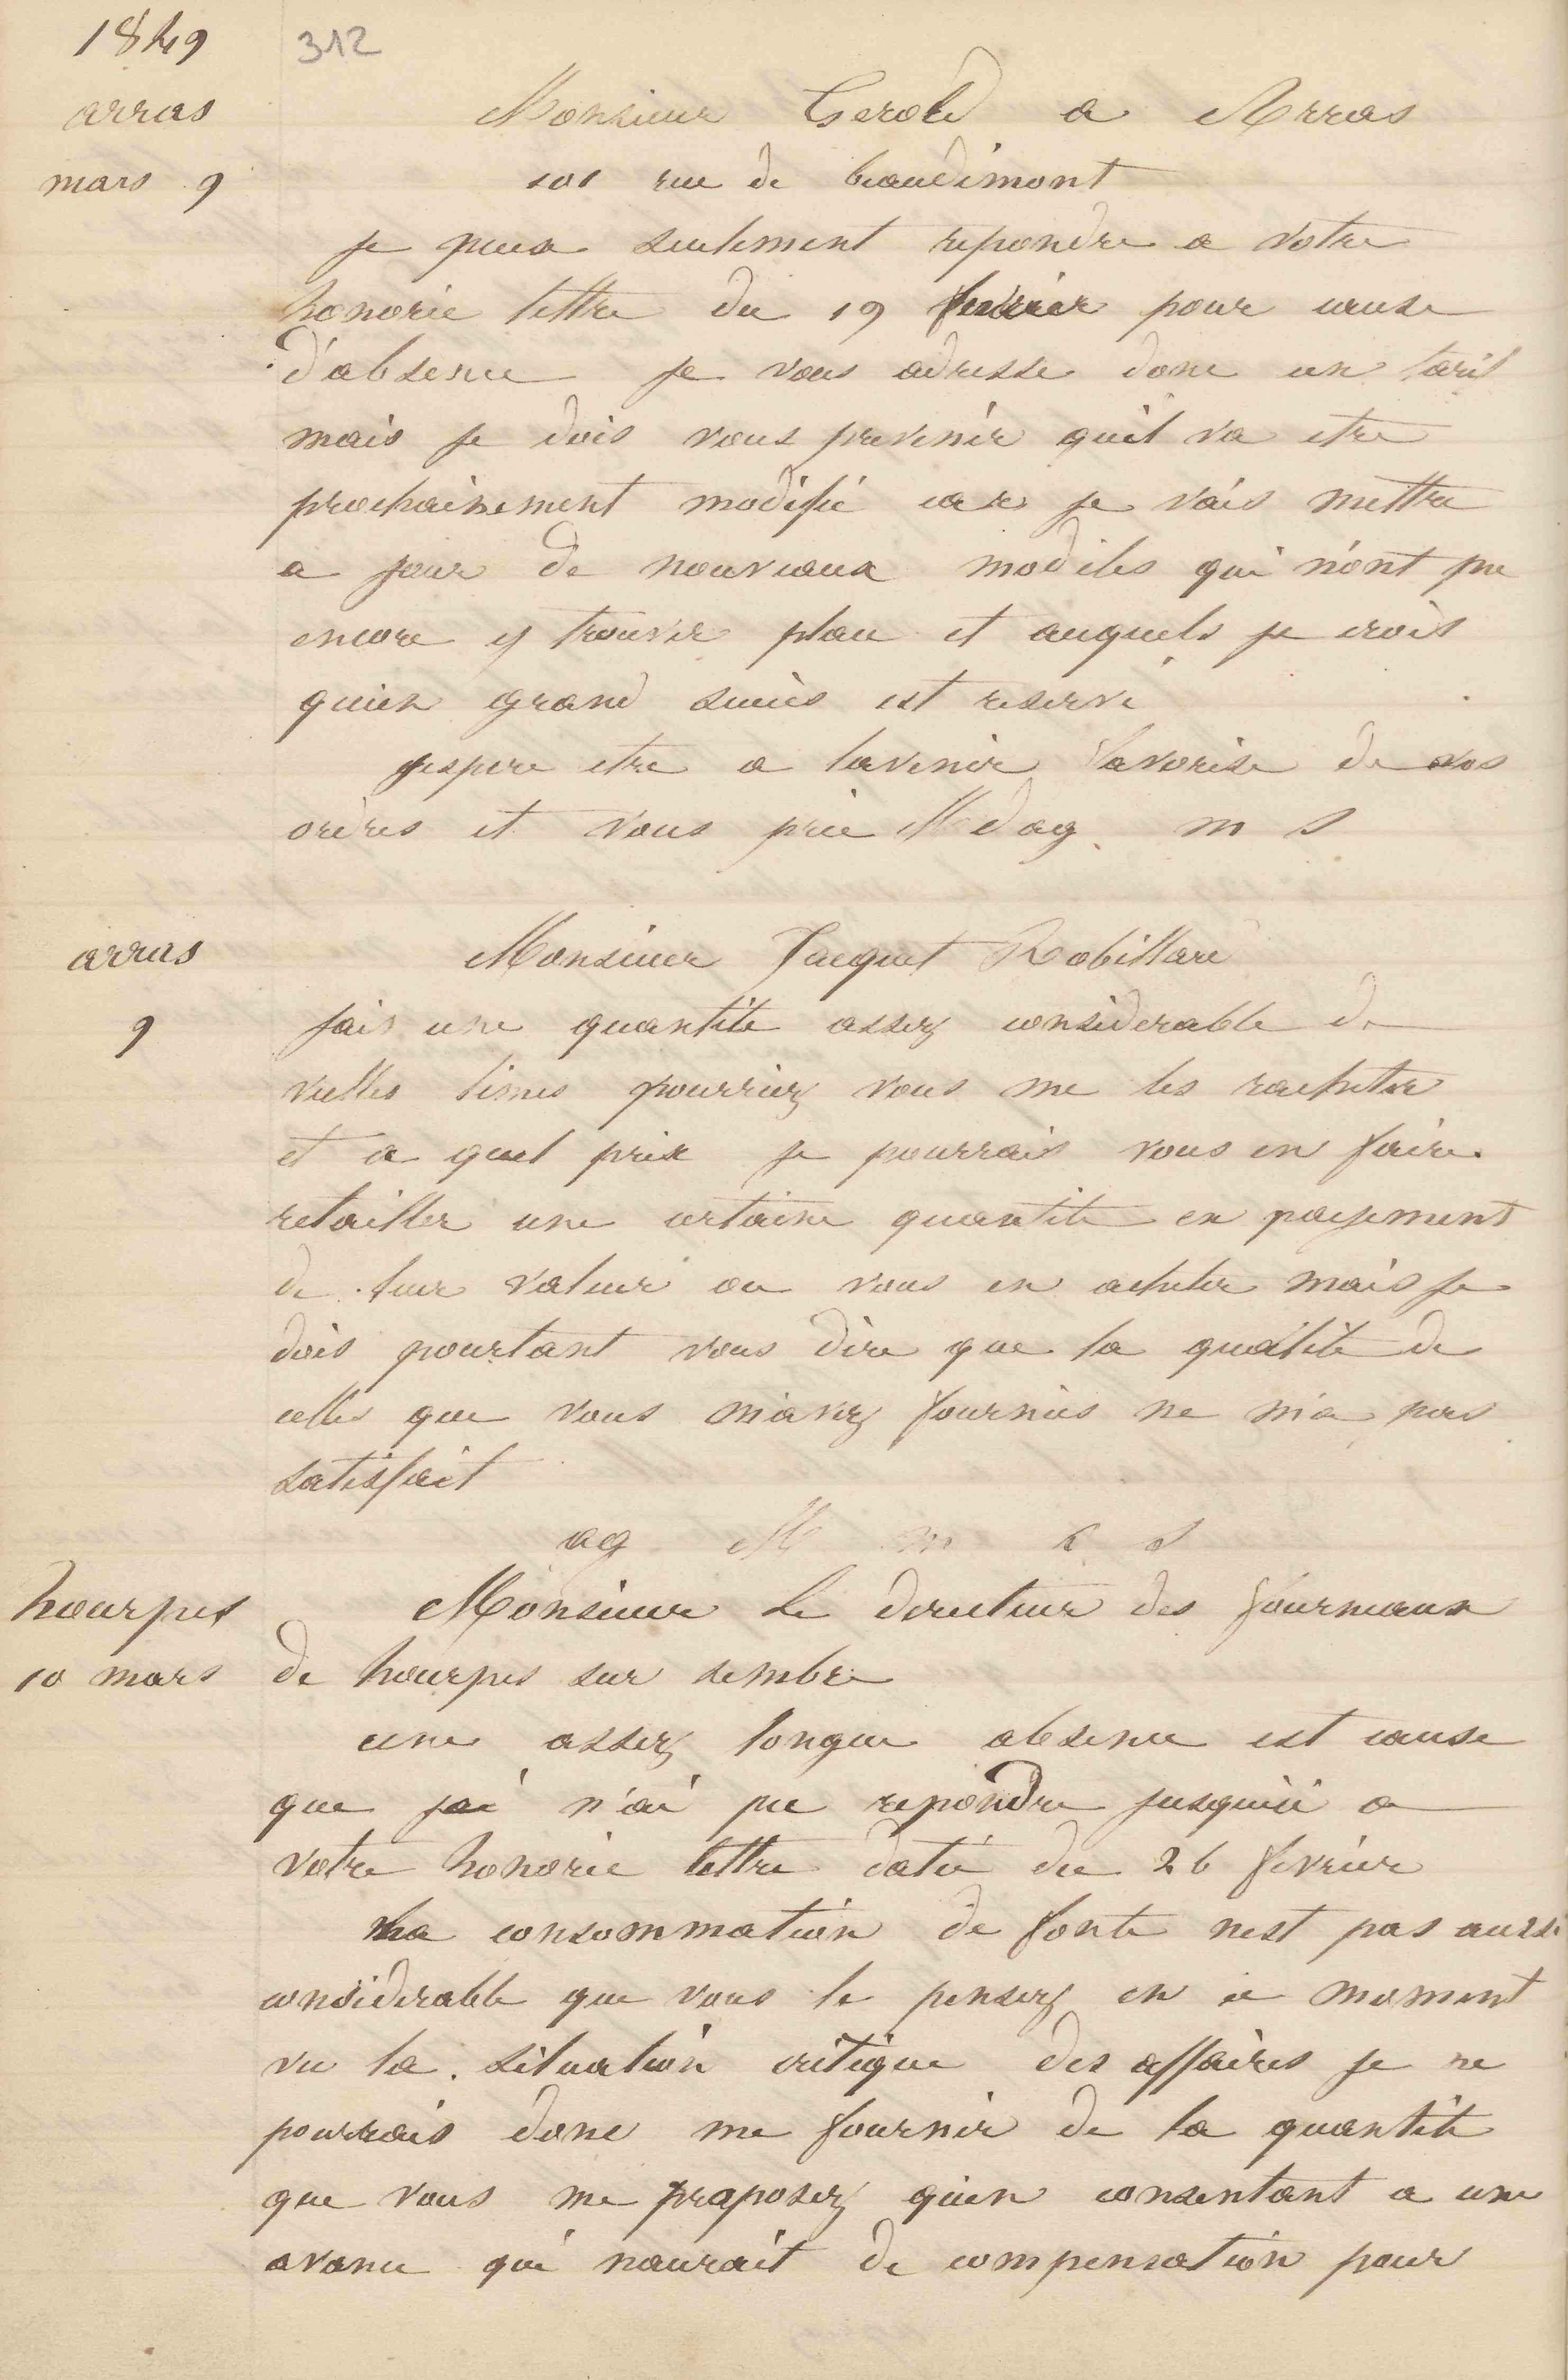 Jean-Baptiste André Godin à monsieur Jacquet-Robillard, 9 mars 1849